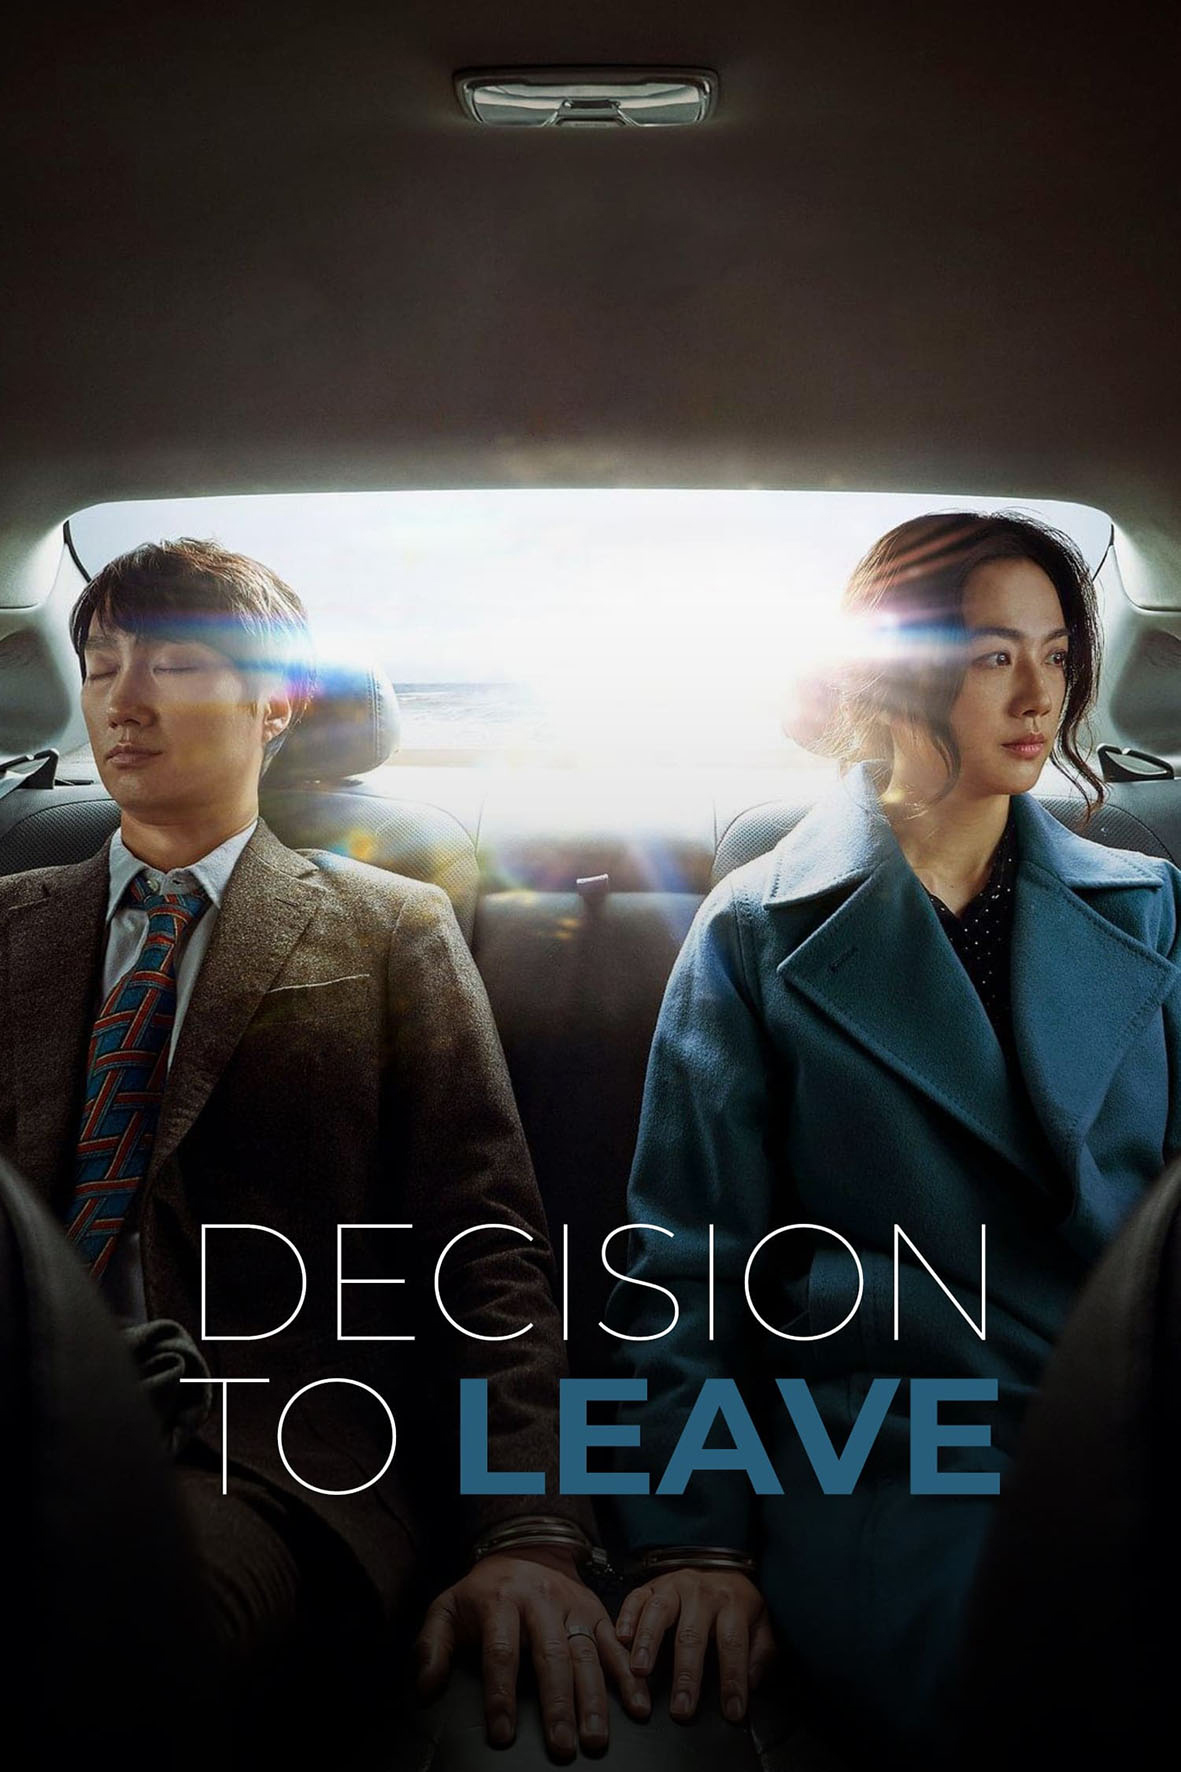 Depois de "Parasita", descubra a nova aposta da Coreia do Sul para o Oscar